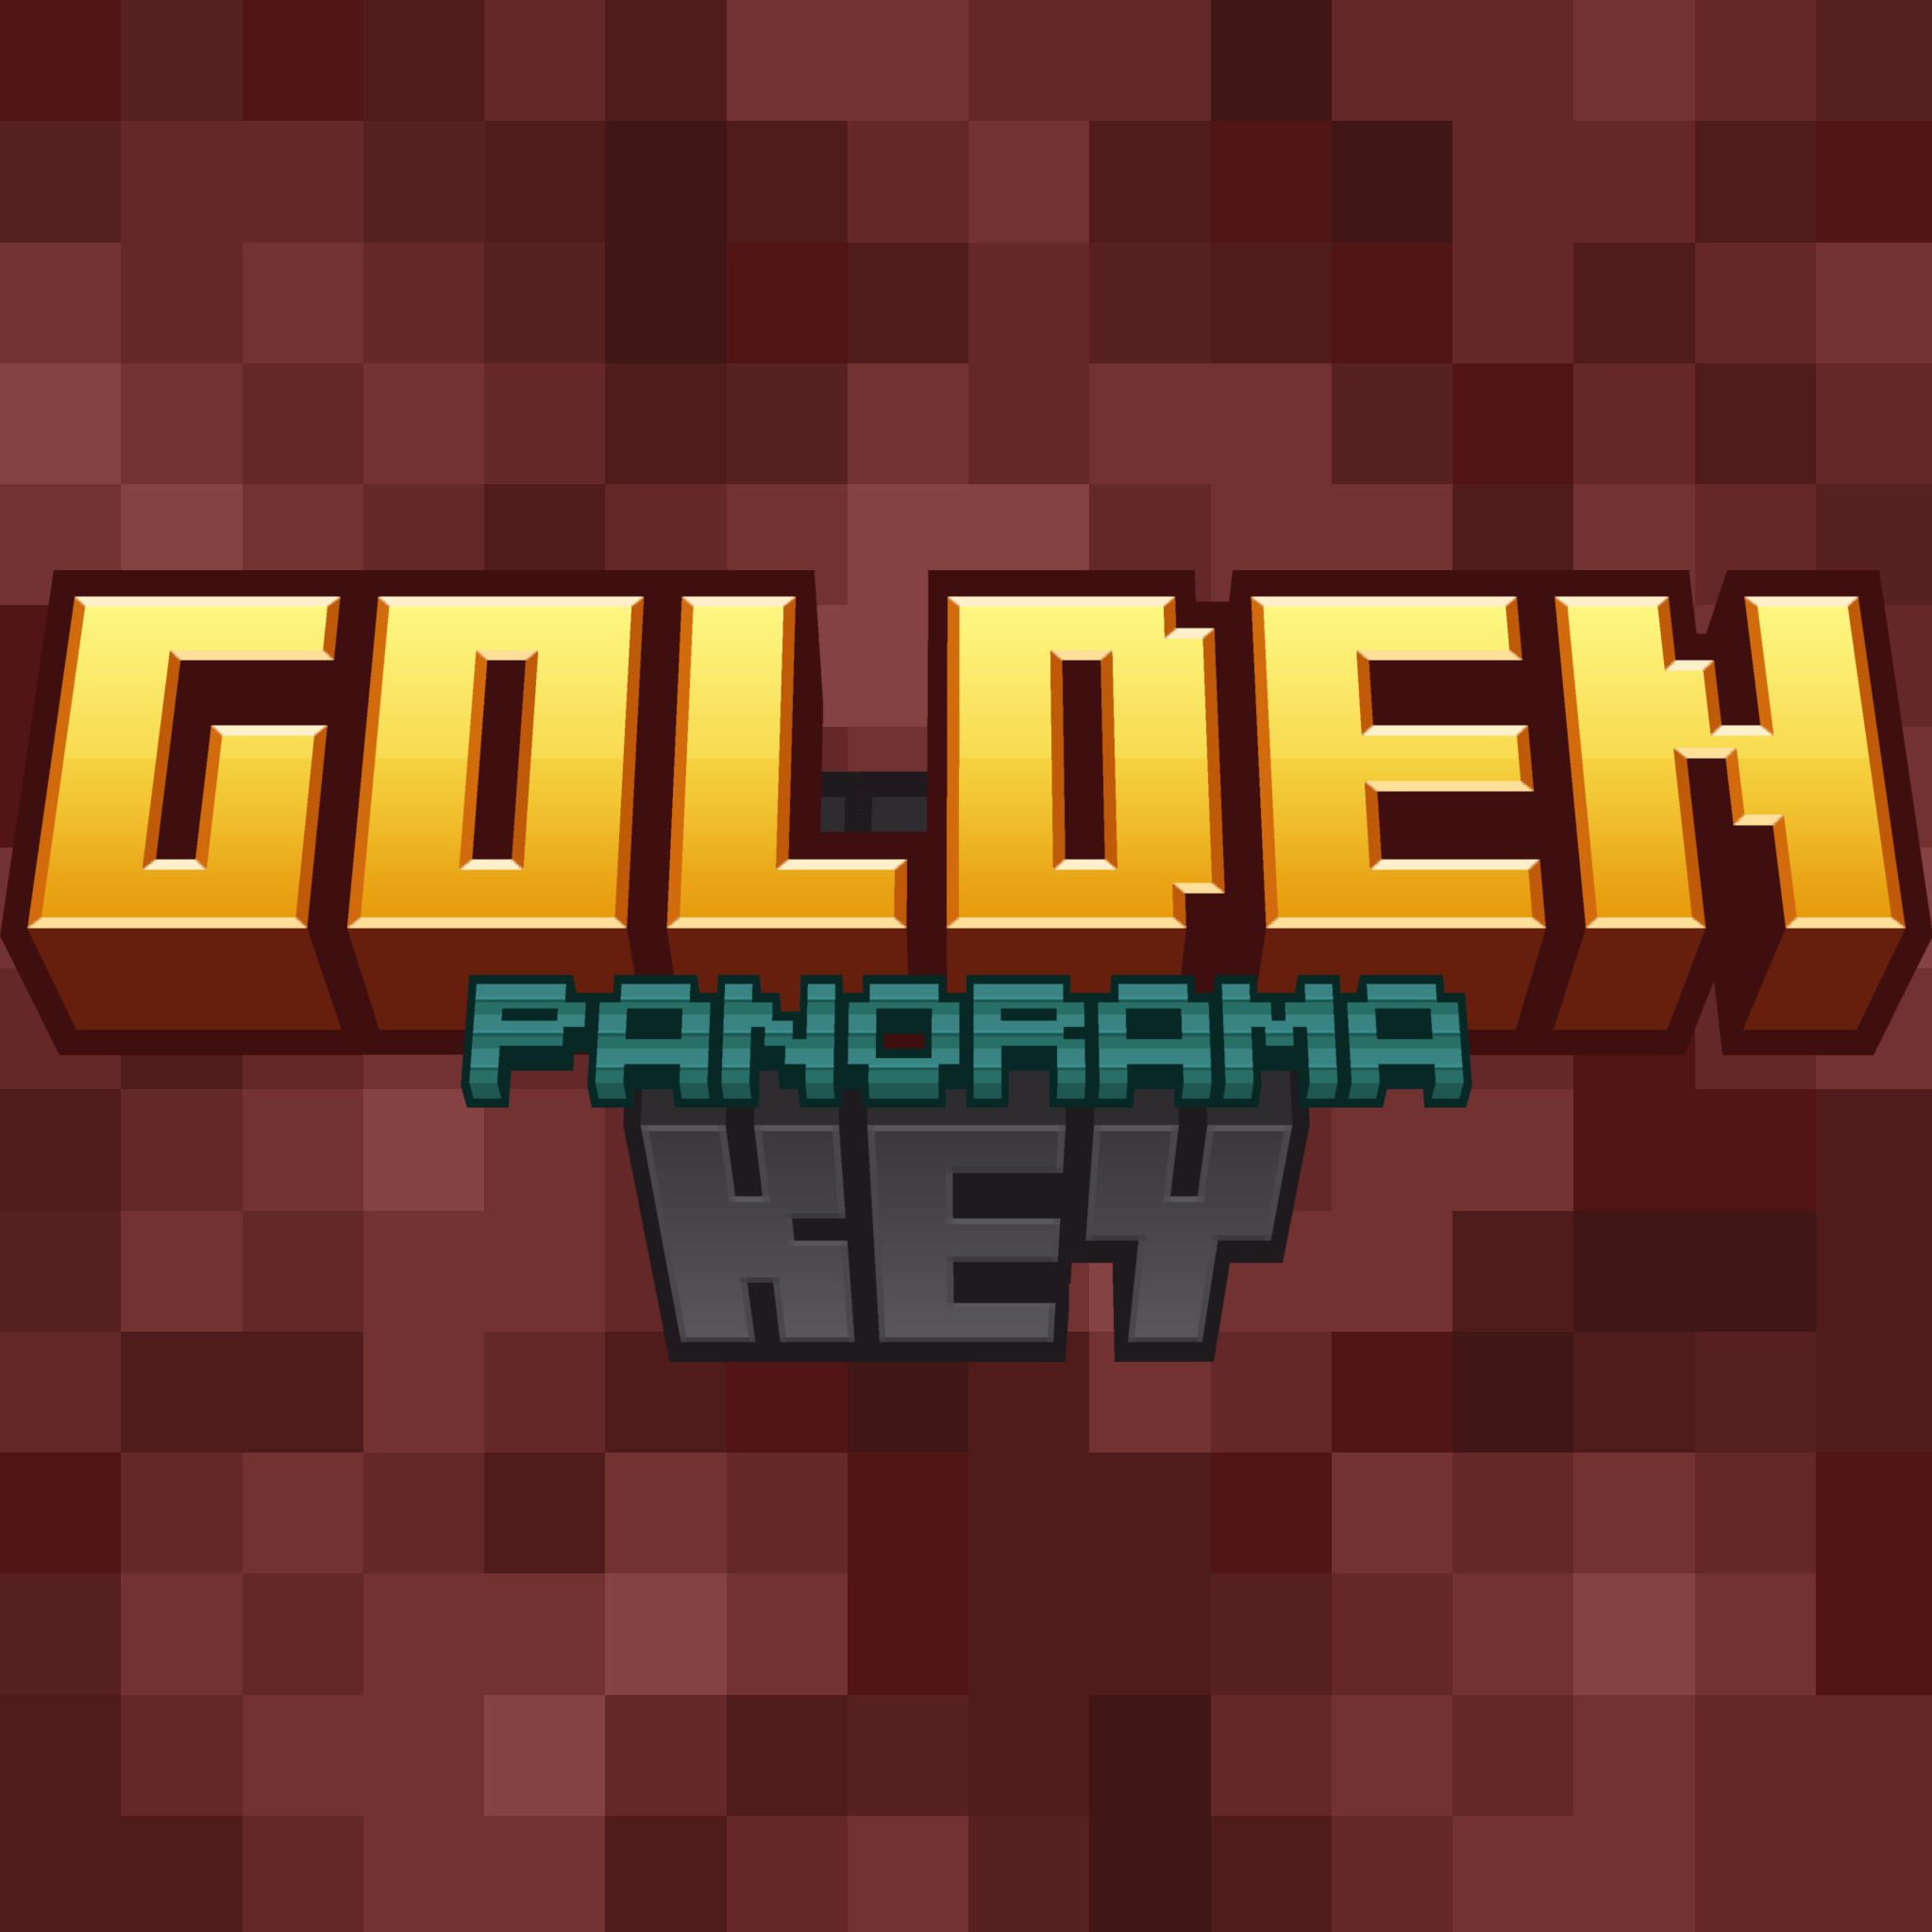 Golden Key: Panorama